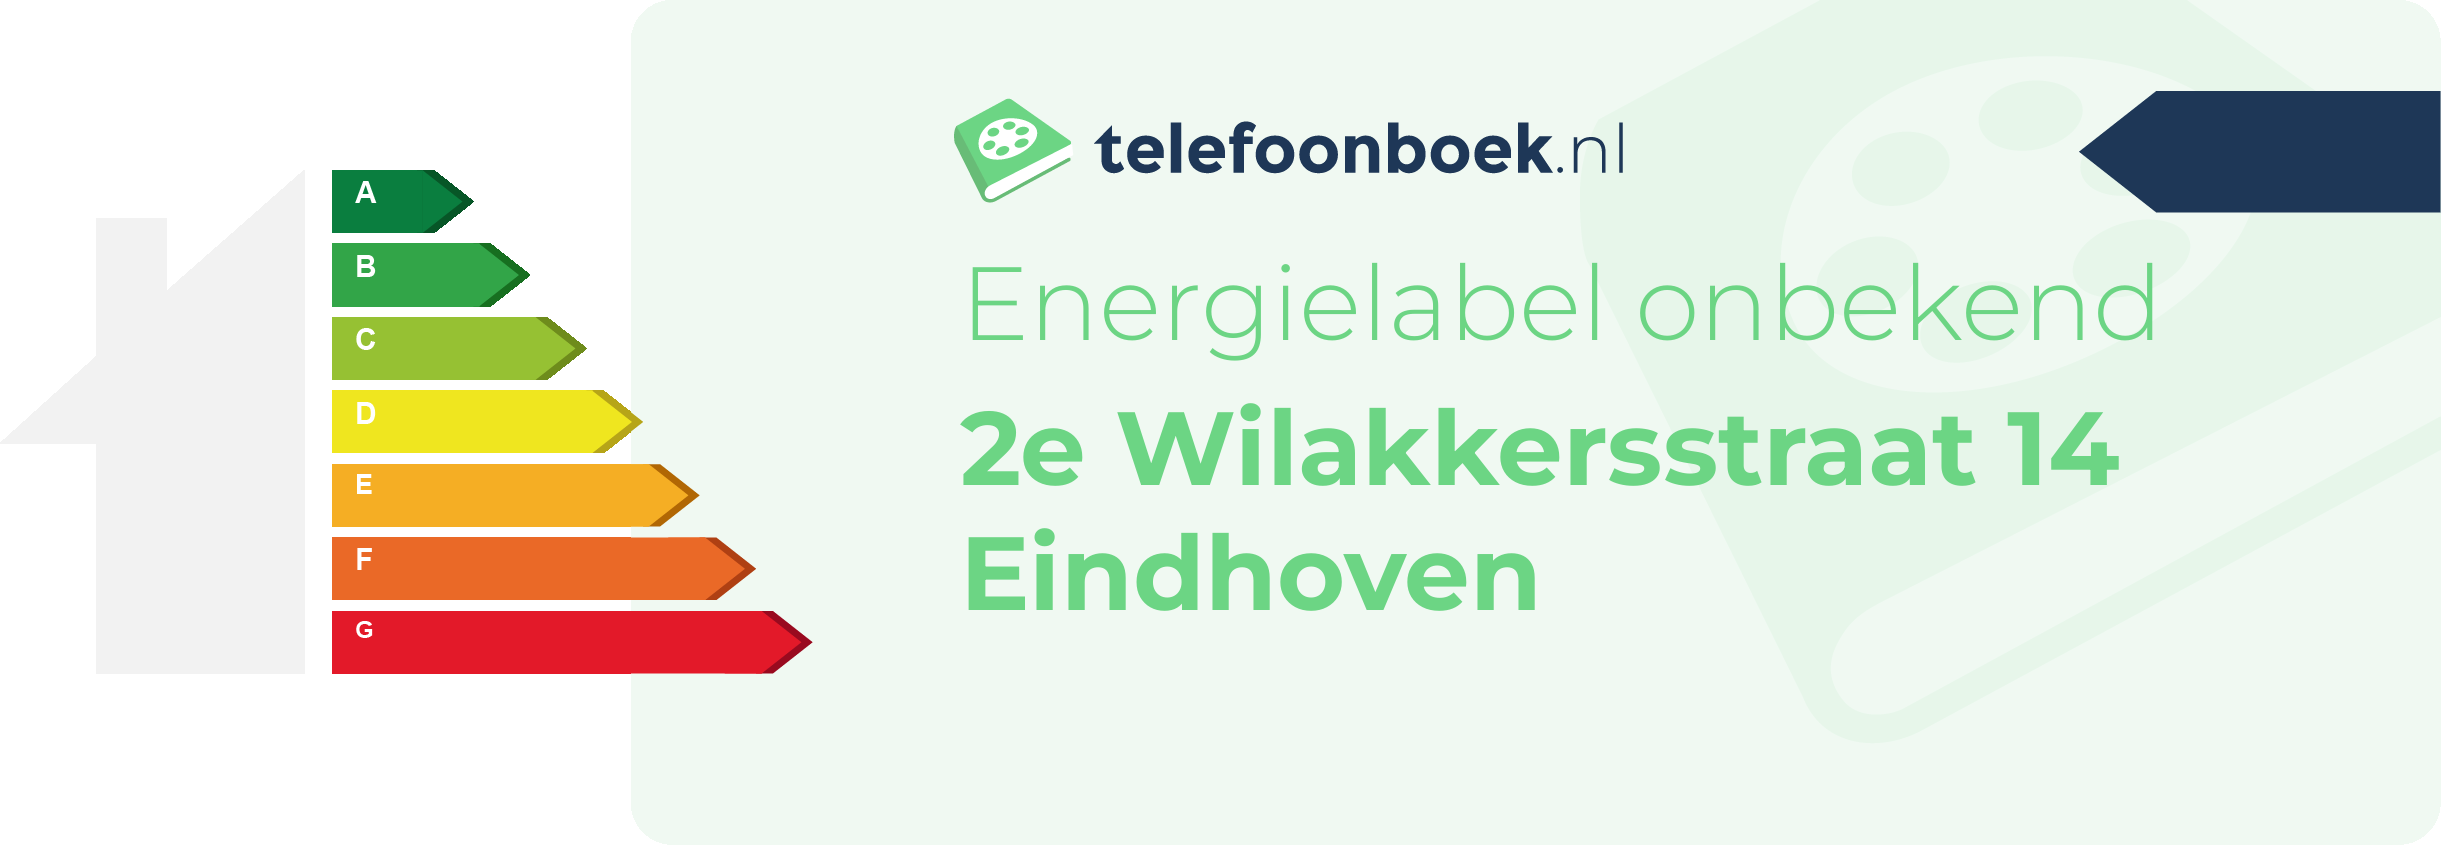 Energielabel 2e Wilakkersstraat 14 Eindhoven